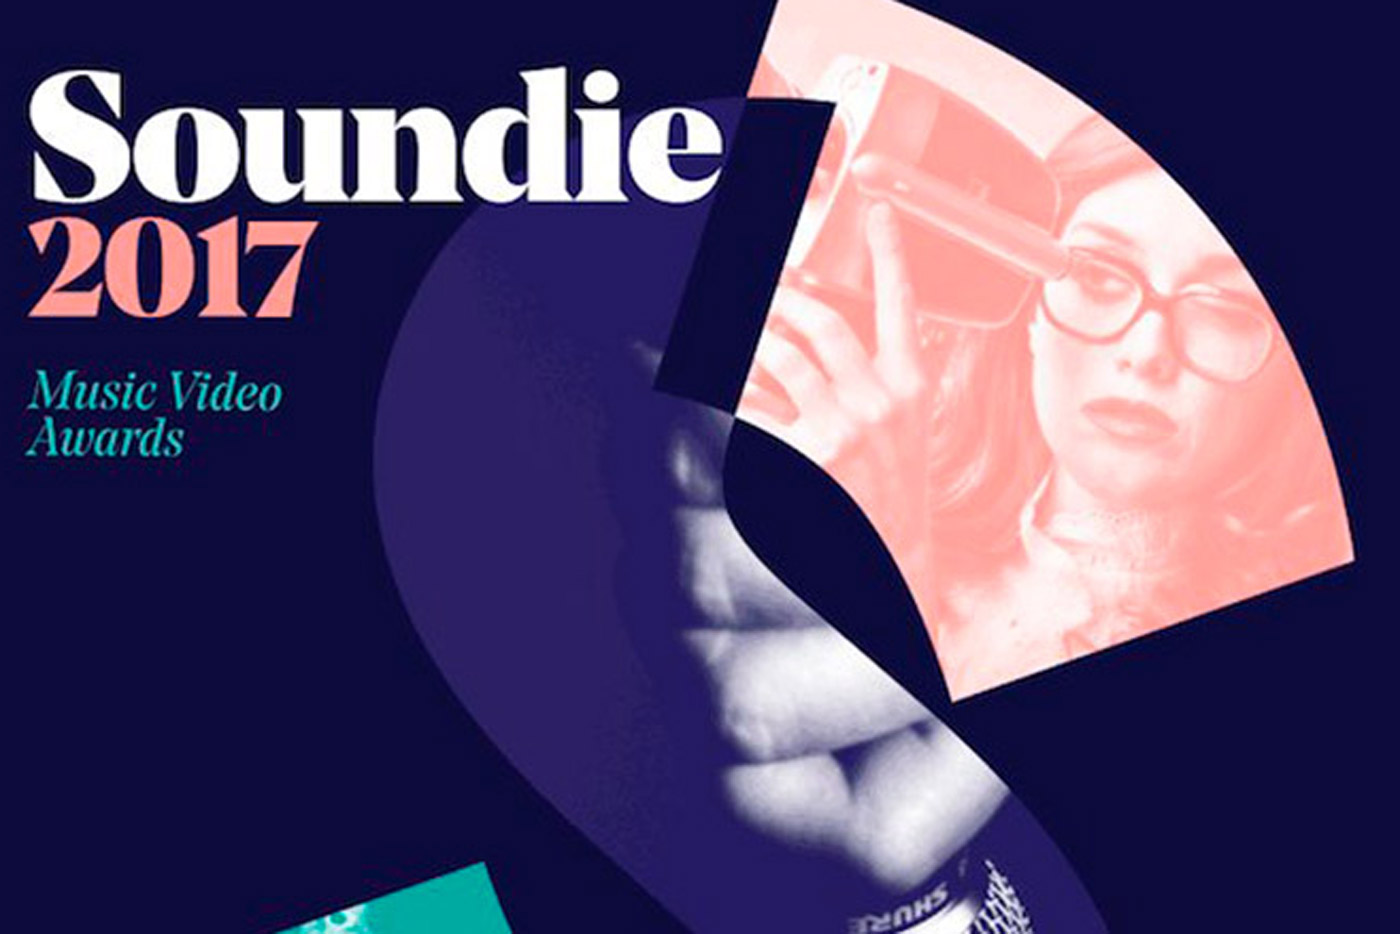 Llega la segunda edición del Soundie Music Video Awards